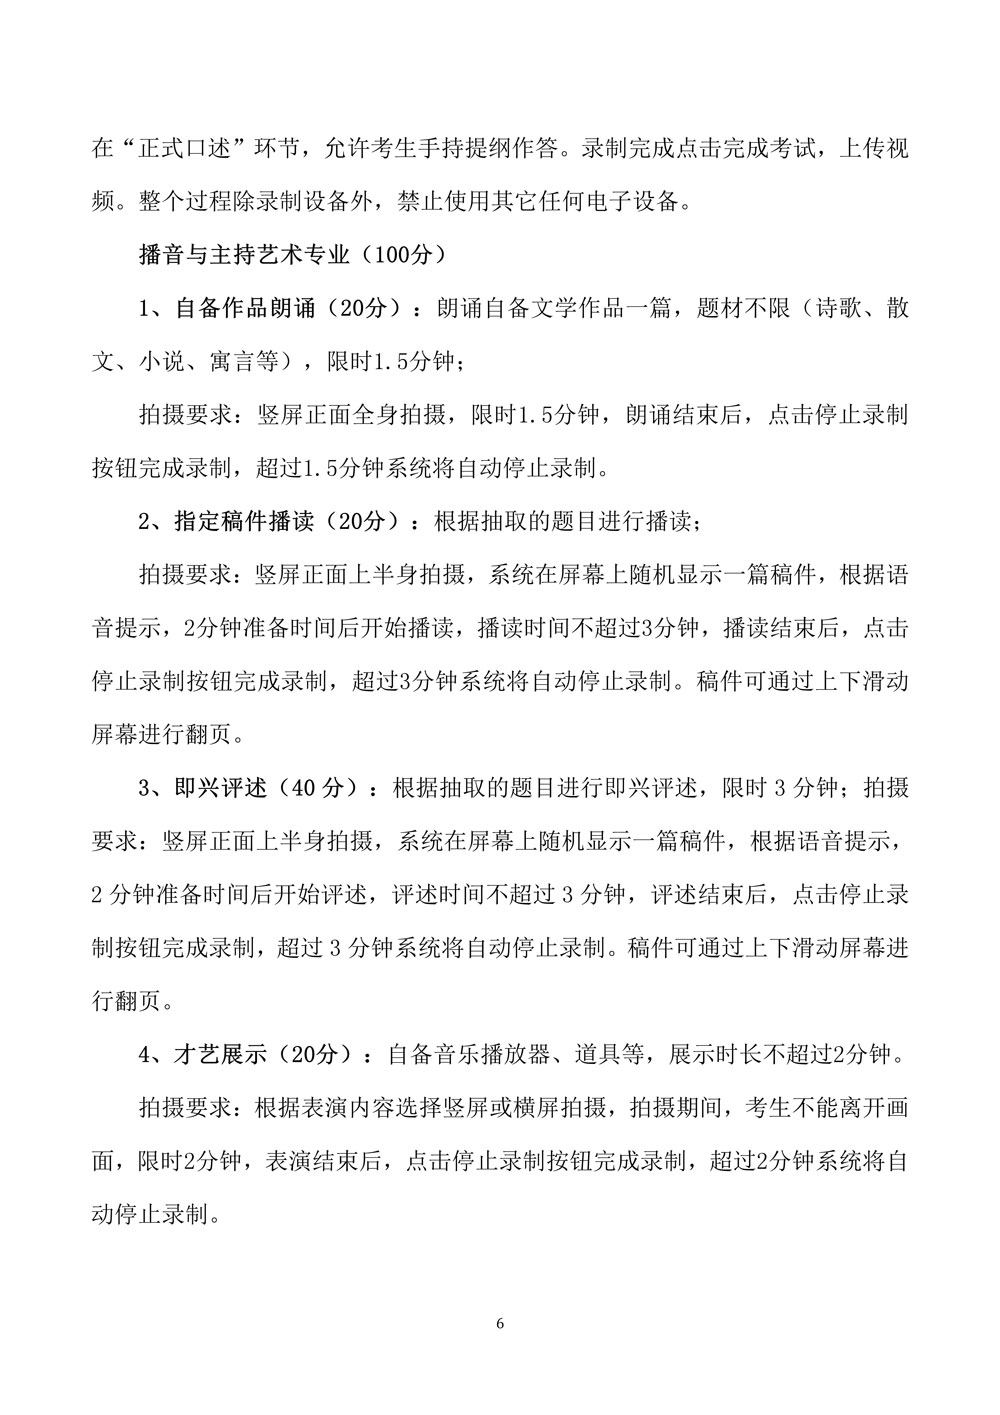 燕京理工学院关于调整2020年艺术类专业校考的公告6.jpg